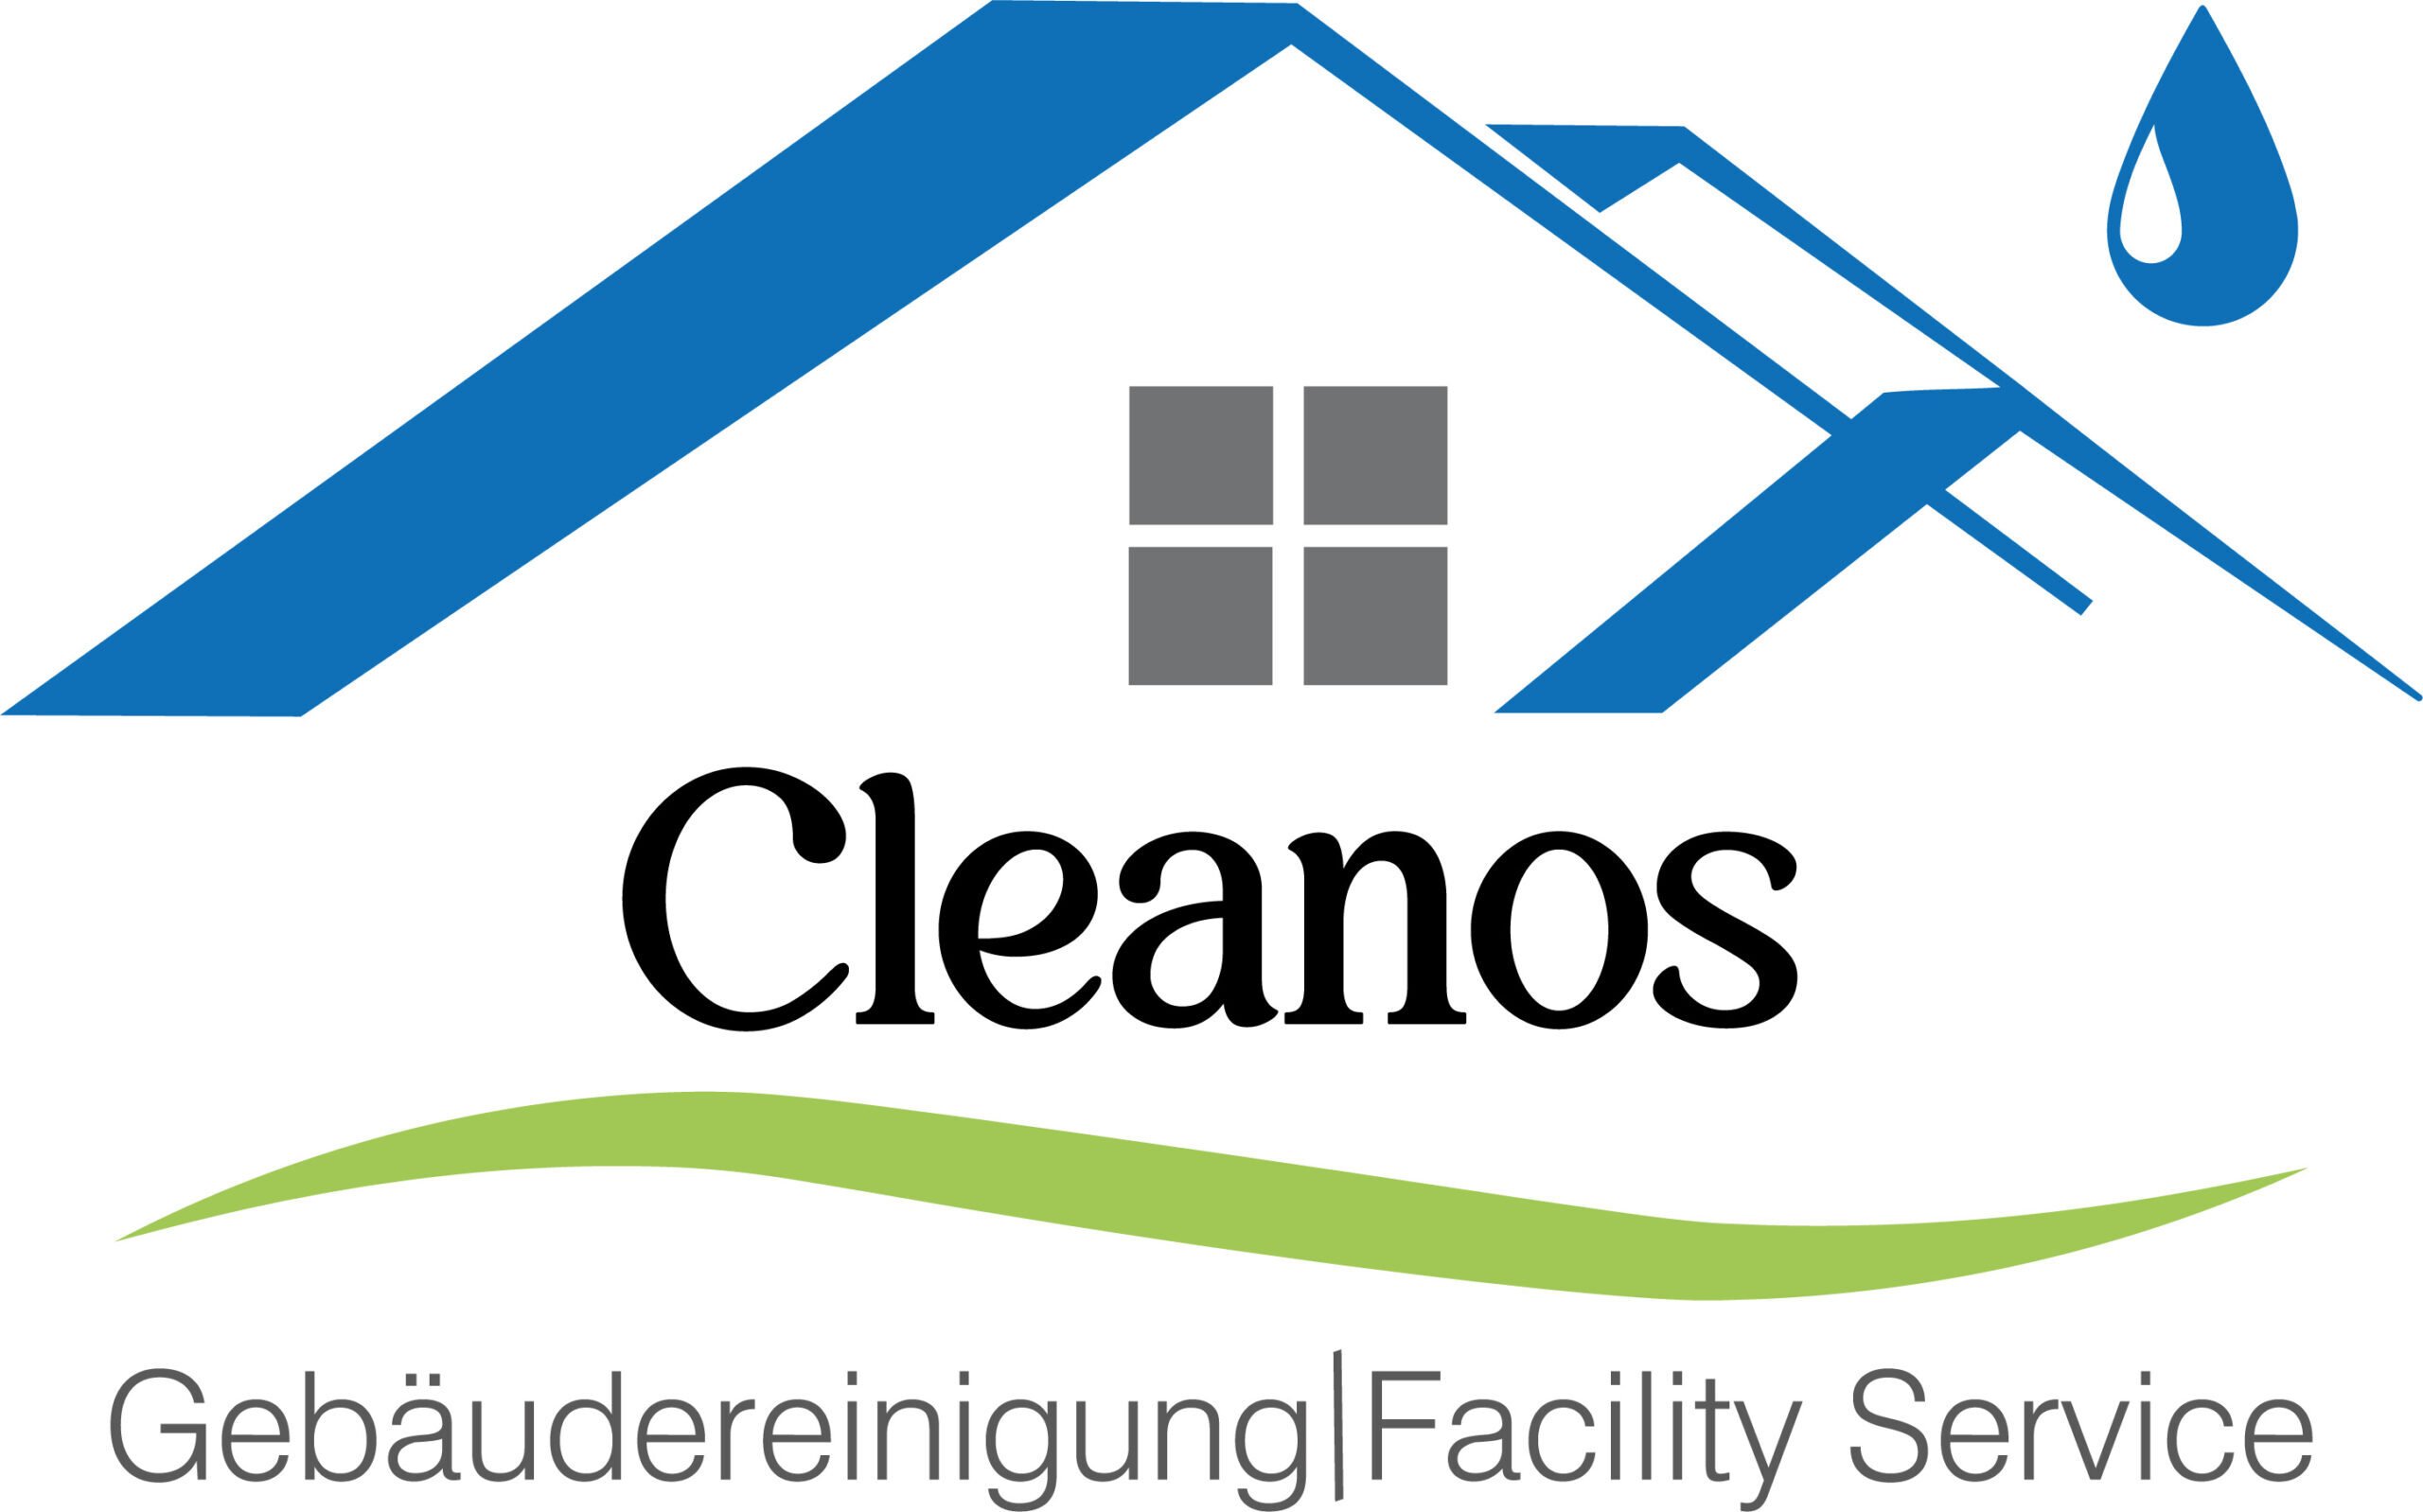 Cleanos Gebäudereinigung & Facility Service